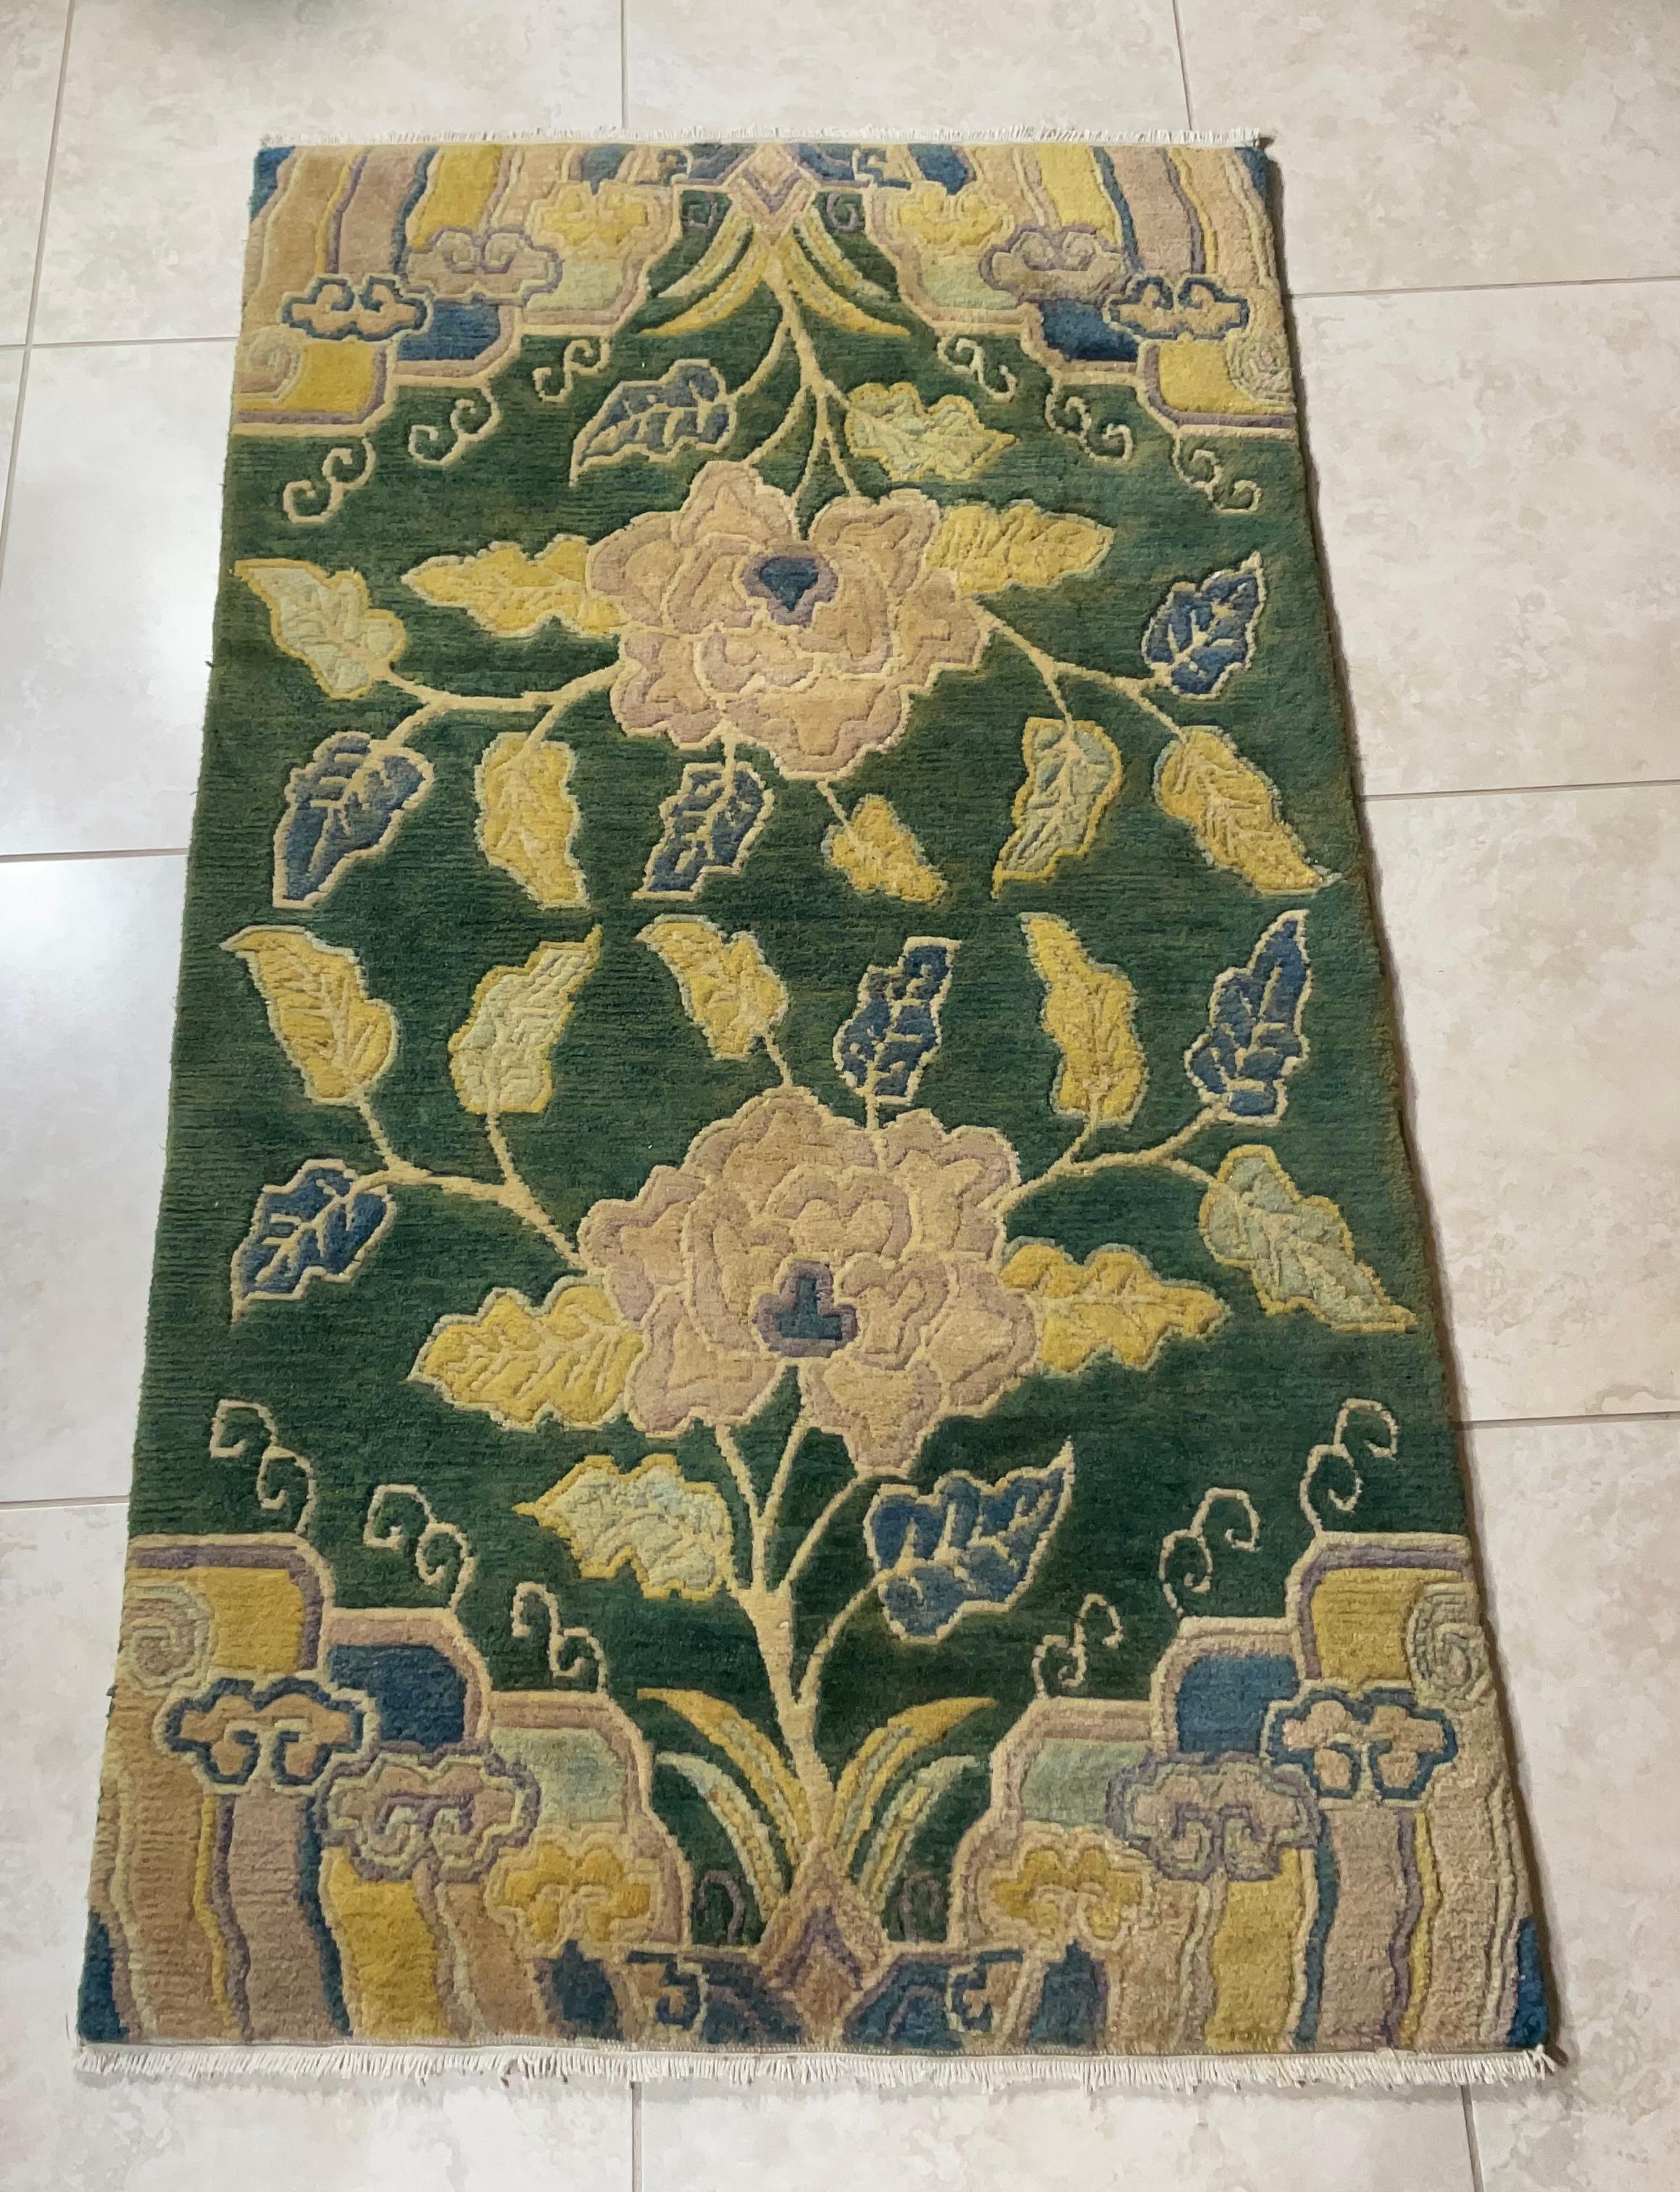 Wunderschöner handgewebter Teppich aus Wolle mit floralen Motiven auf allen Seiten. Schöne Farben, stabil auf dem Boden. 
Professionell von Hand gewaschen, sofort einsatzbereit.